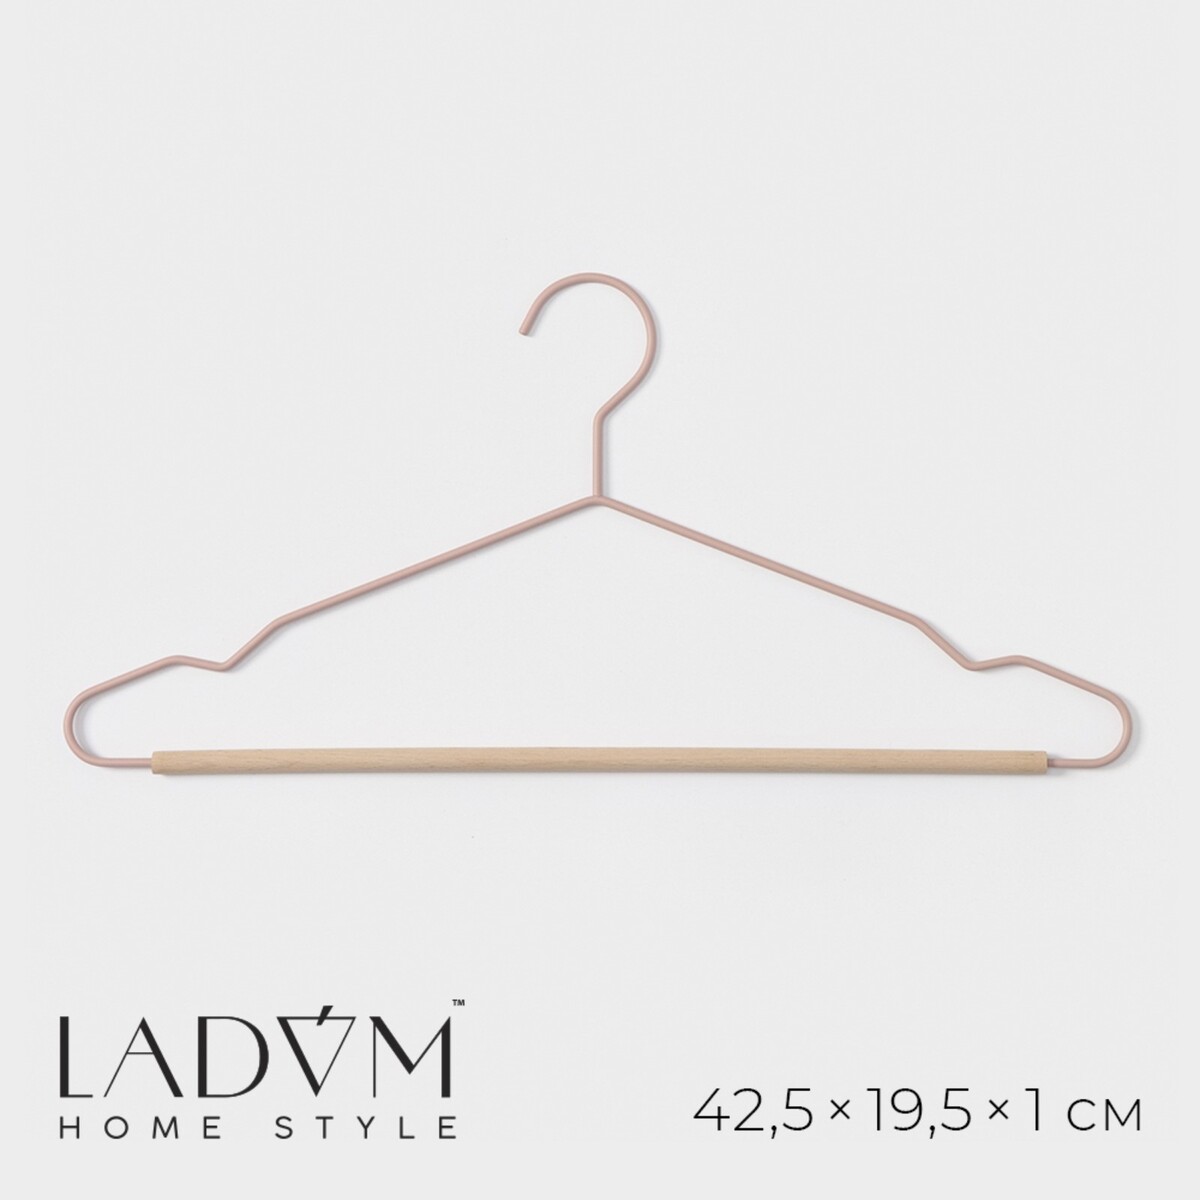 Плечики - вешалка для одежды ladо́m laconique, 41,5×22,5×1 см, цвет розовый